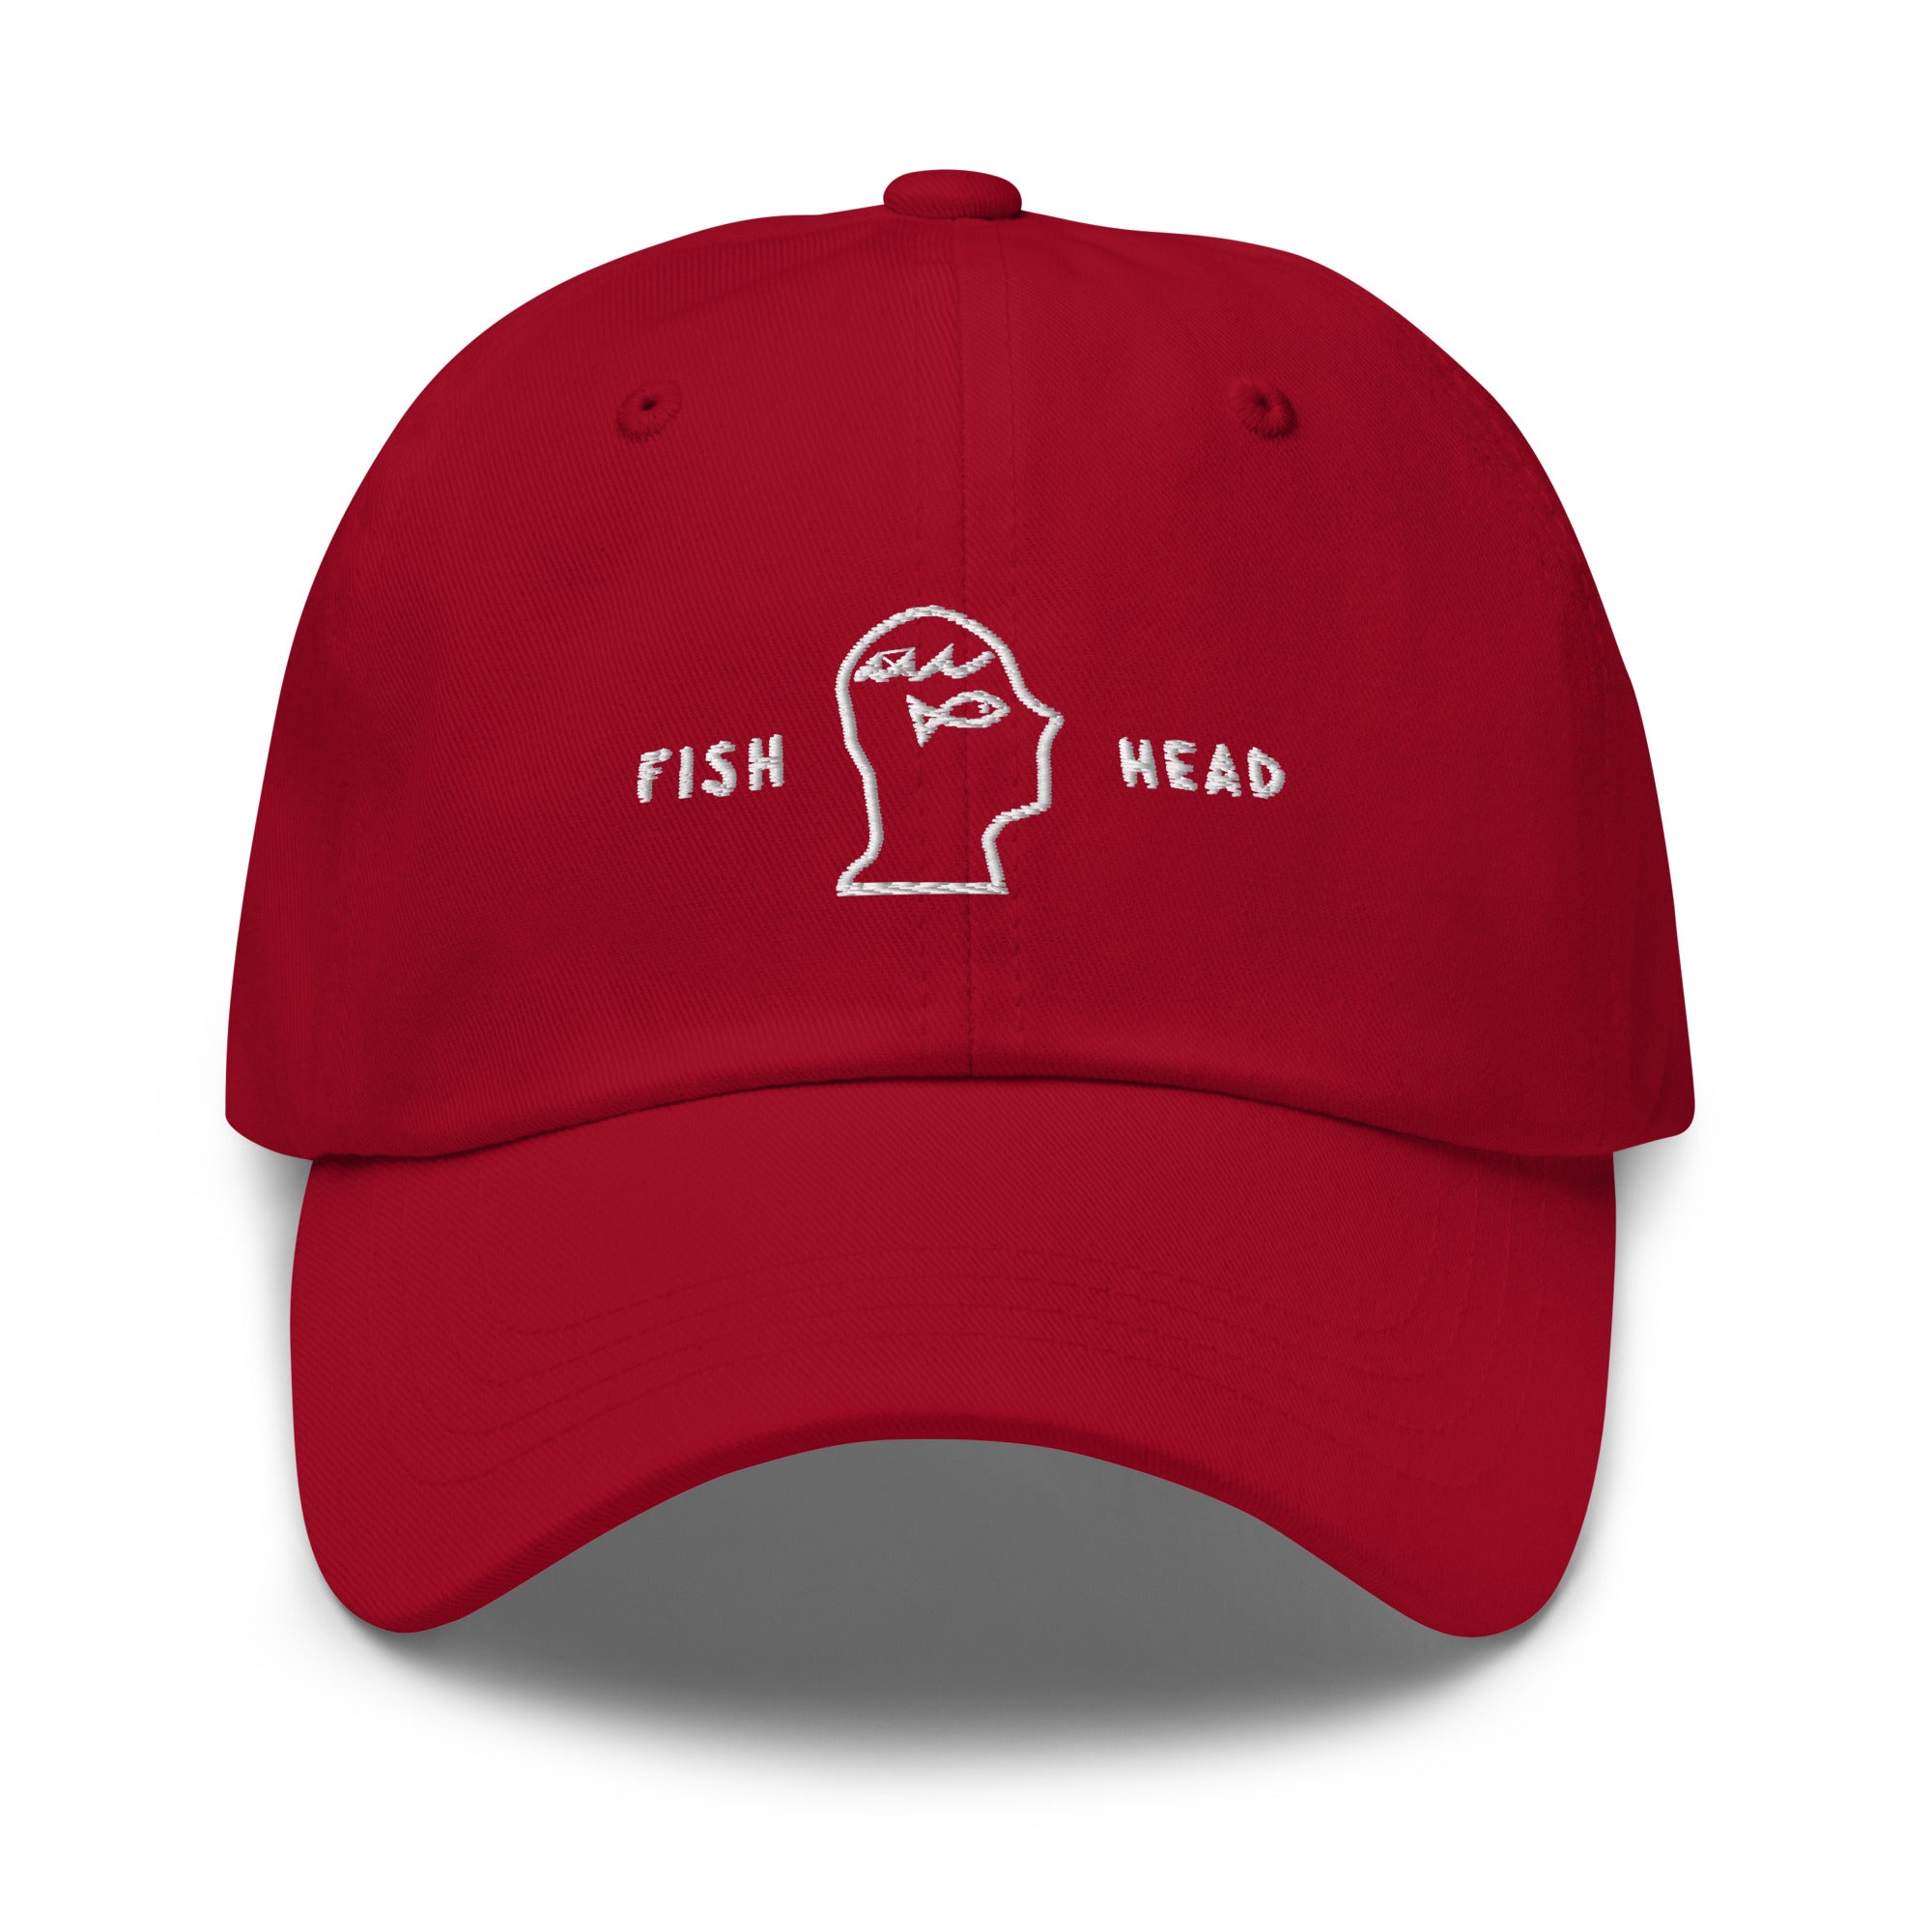 Gone Fishin Bucket Hat Topi pancing fishing cap hat, Men's Fashion